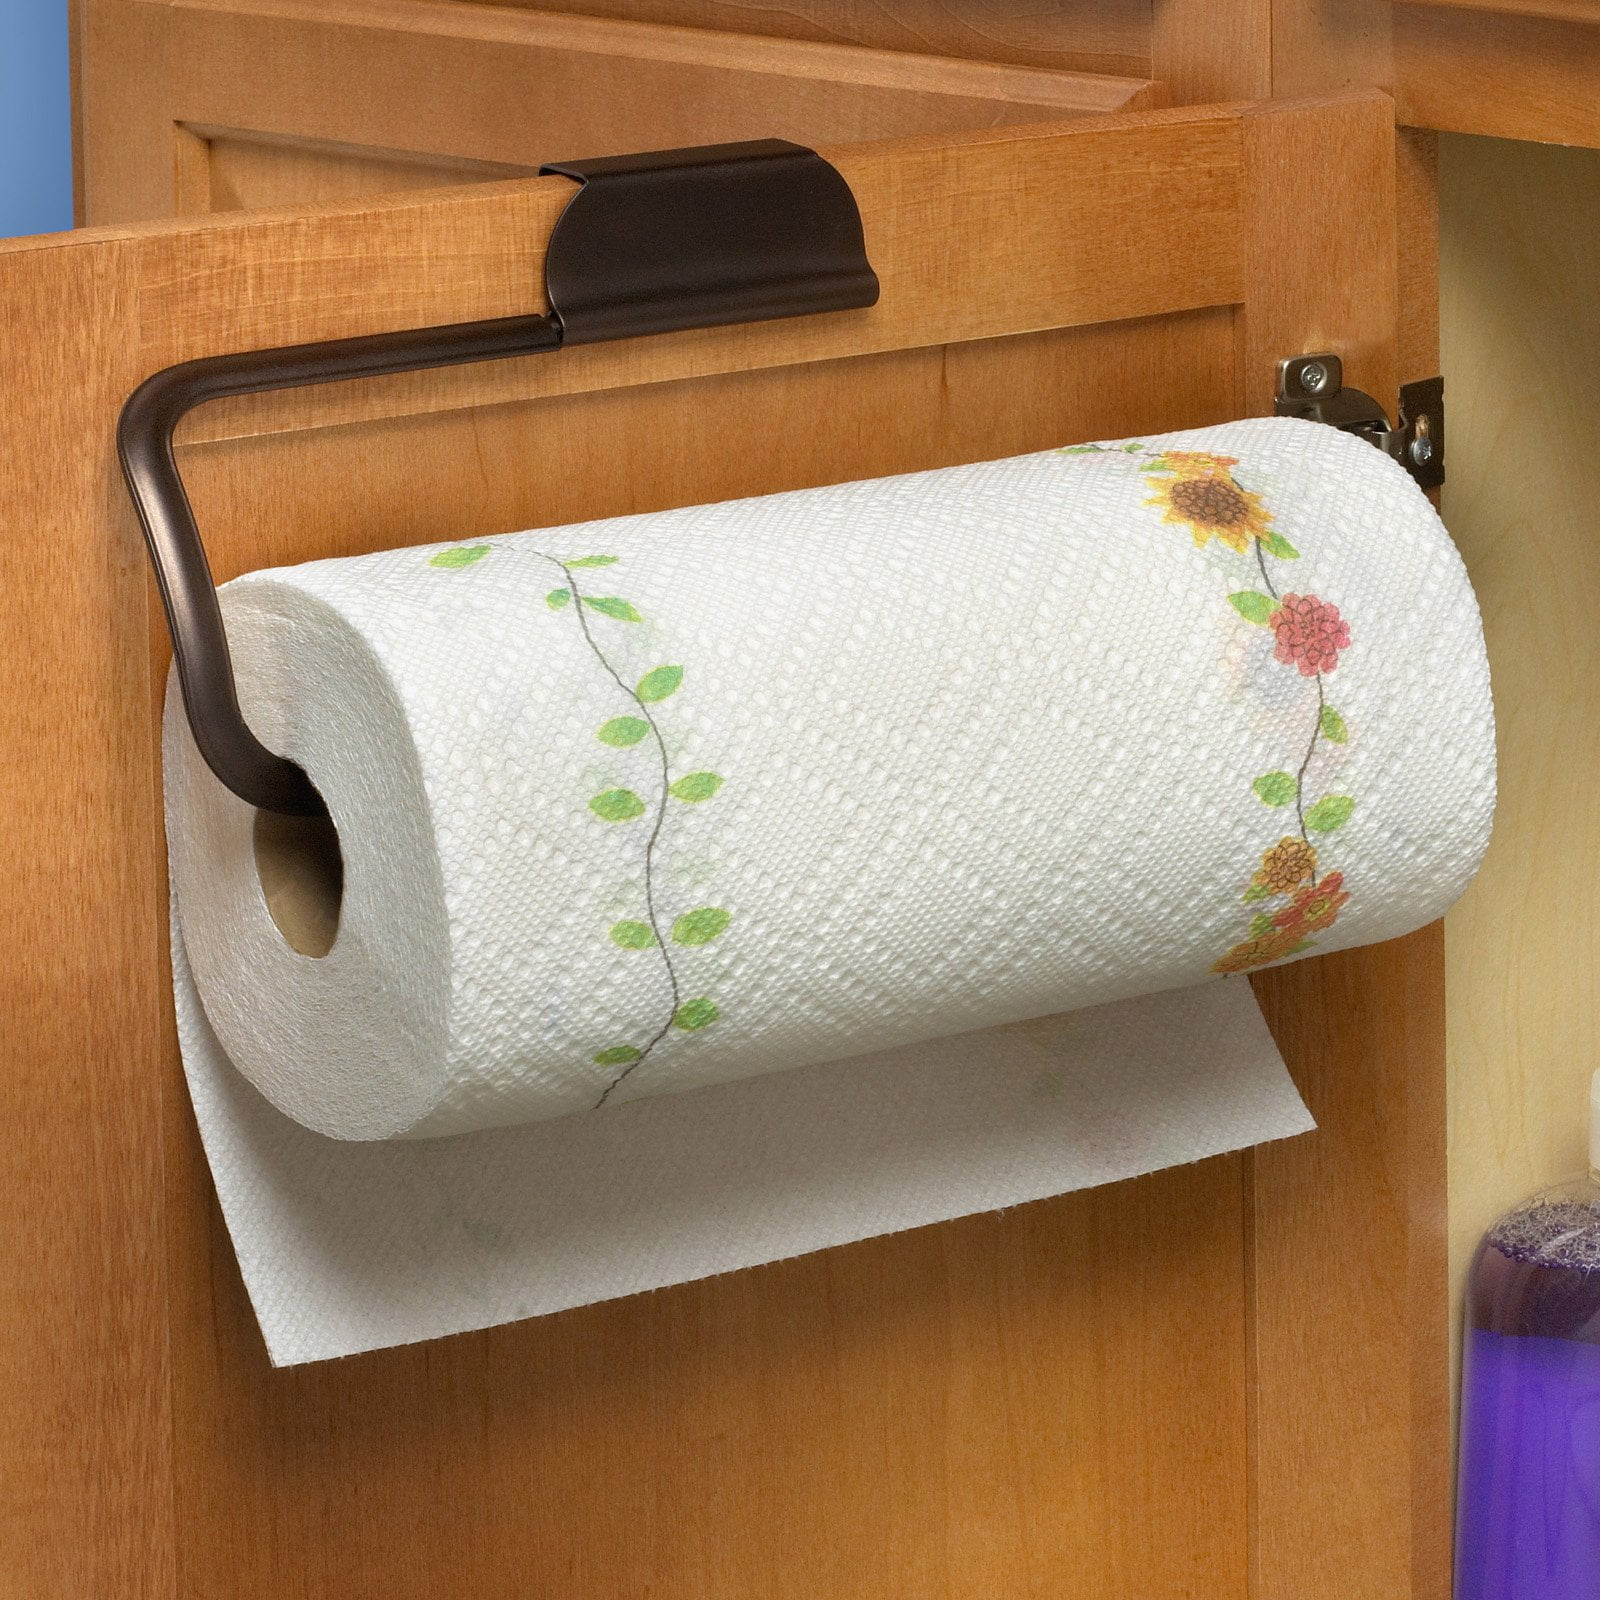 最新のデザイン (Scroll Over the Cabinet Paper Towel Holder) - Spectrum